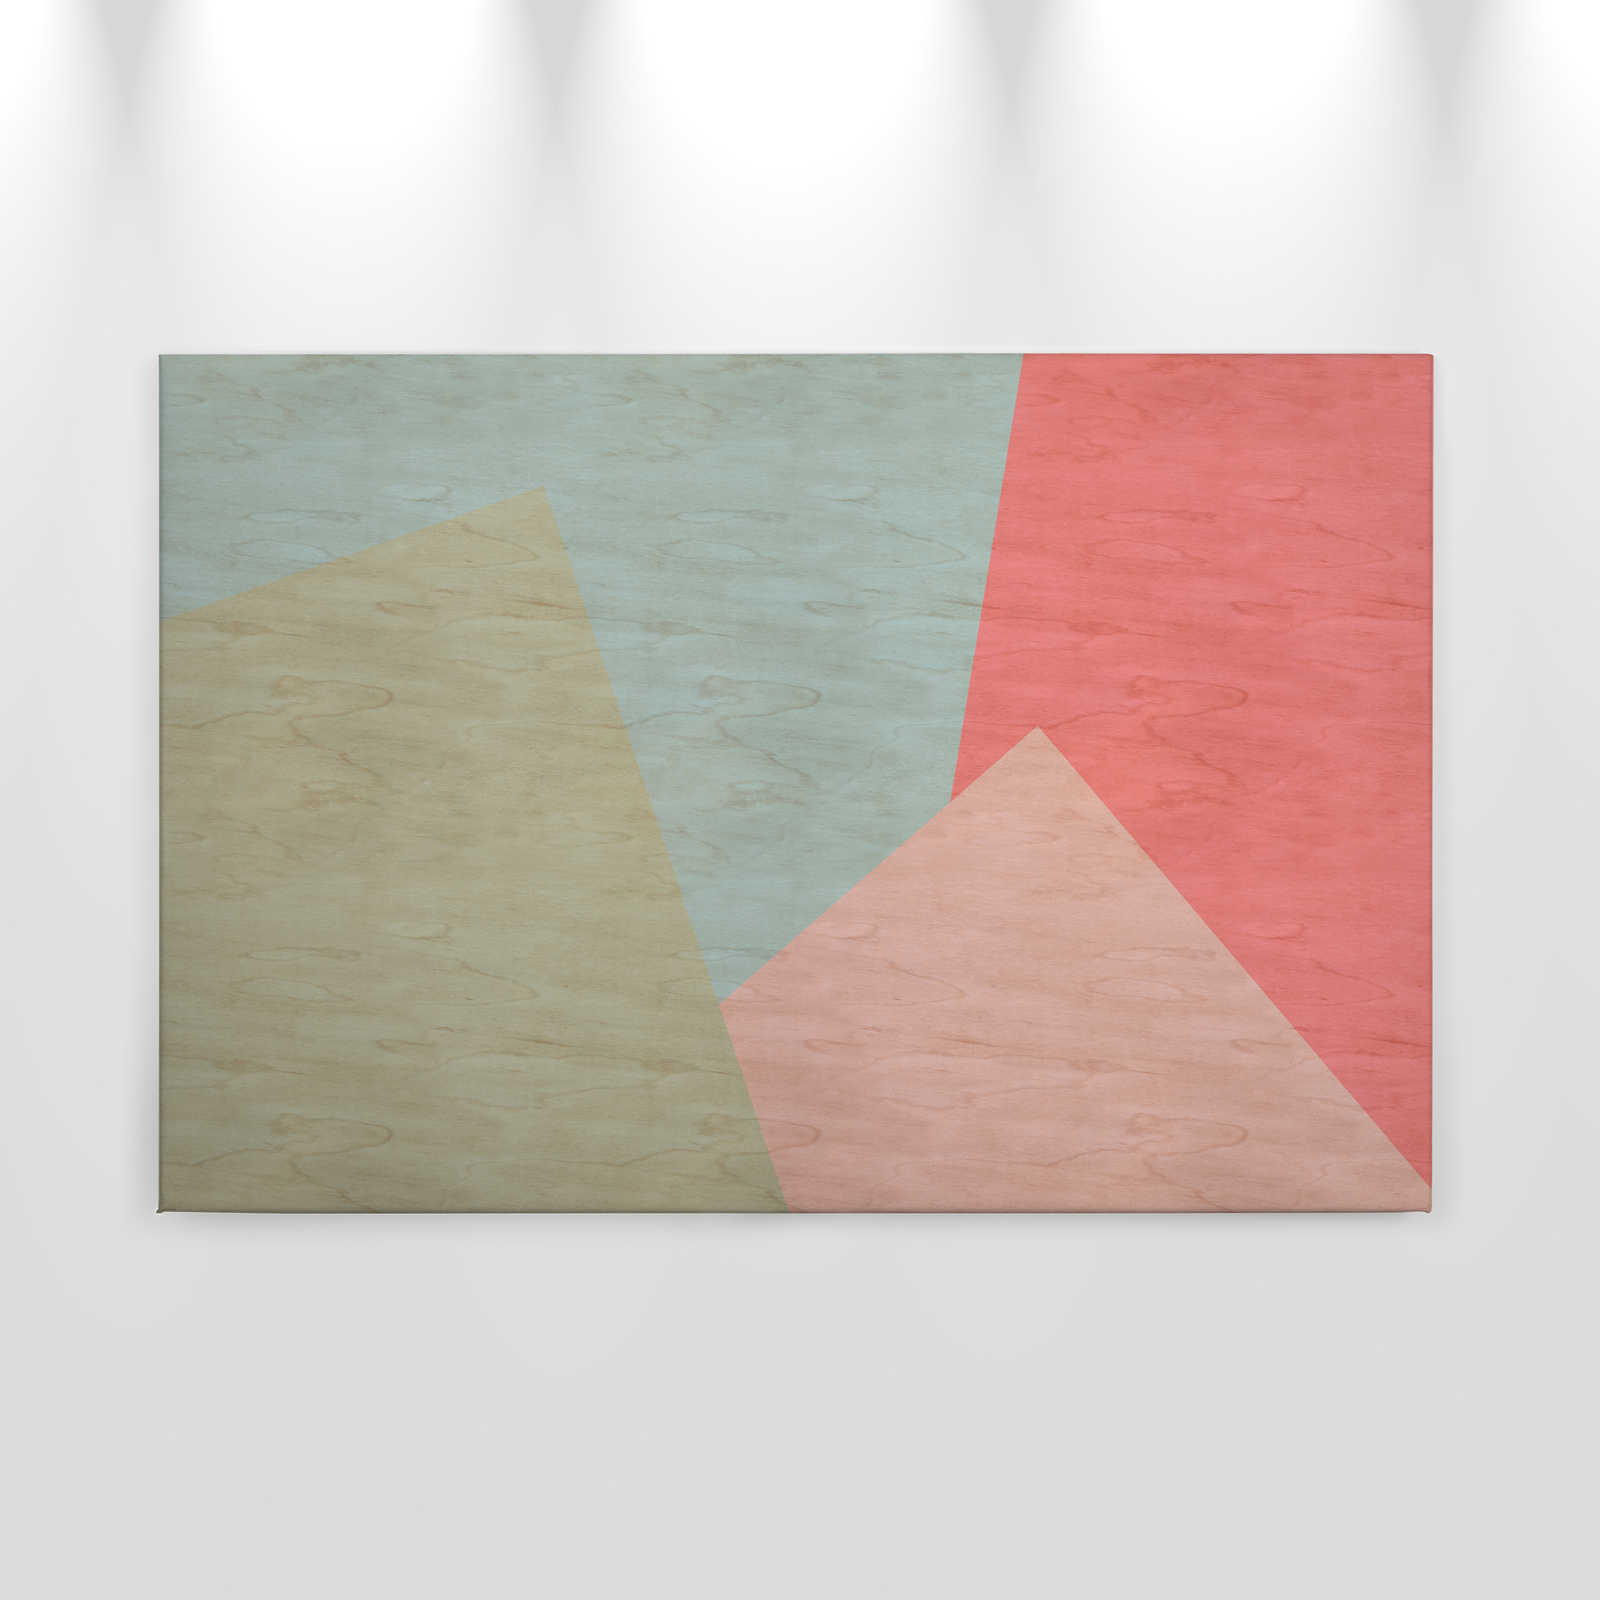             Inaly 2 - Abstract kleurrijk canvas schilderij in multiplex structuur - 0.90 m x 0.60 m
        